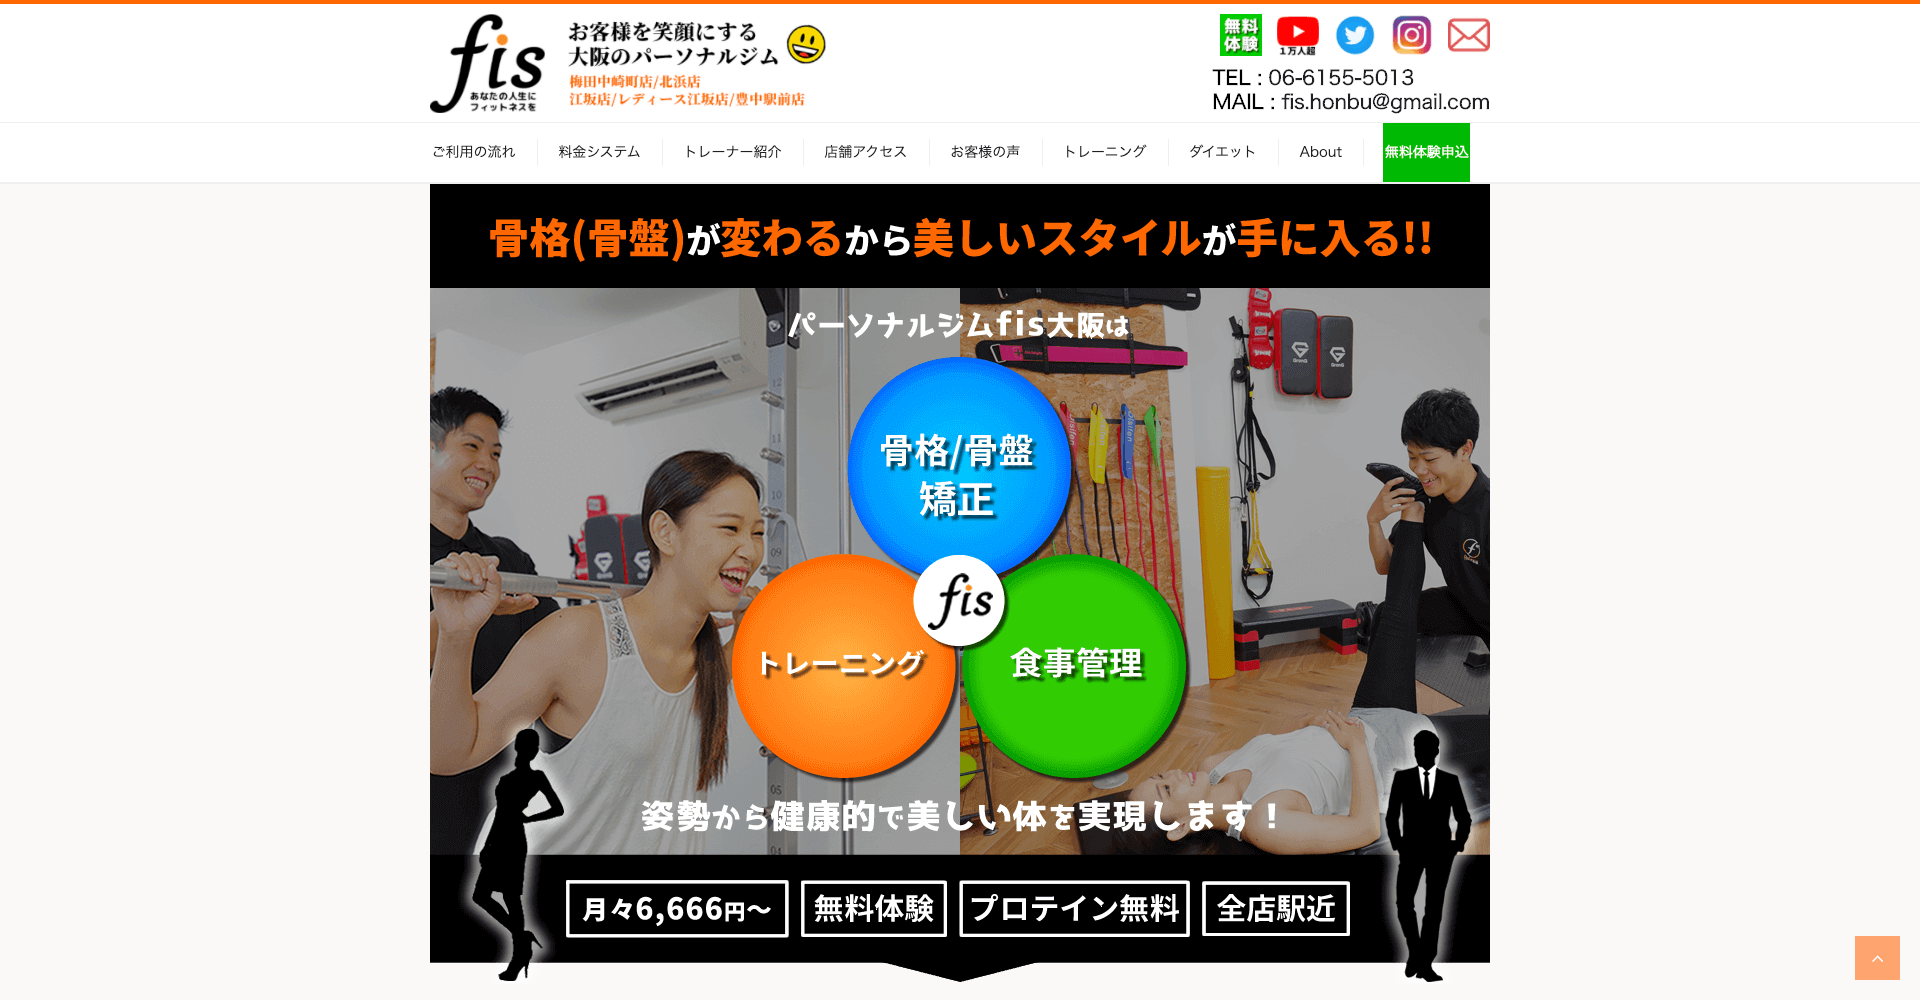 パーソナルトレーニングジム fis. 茨木店